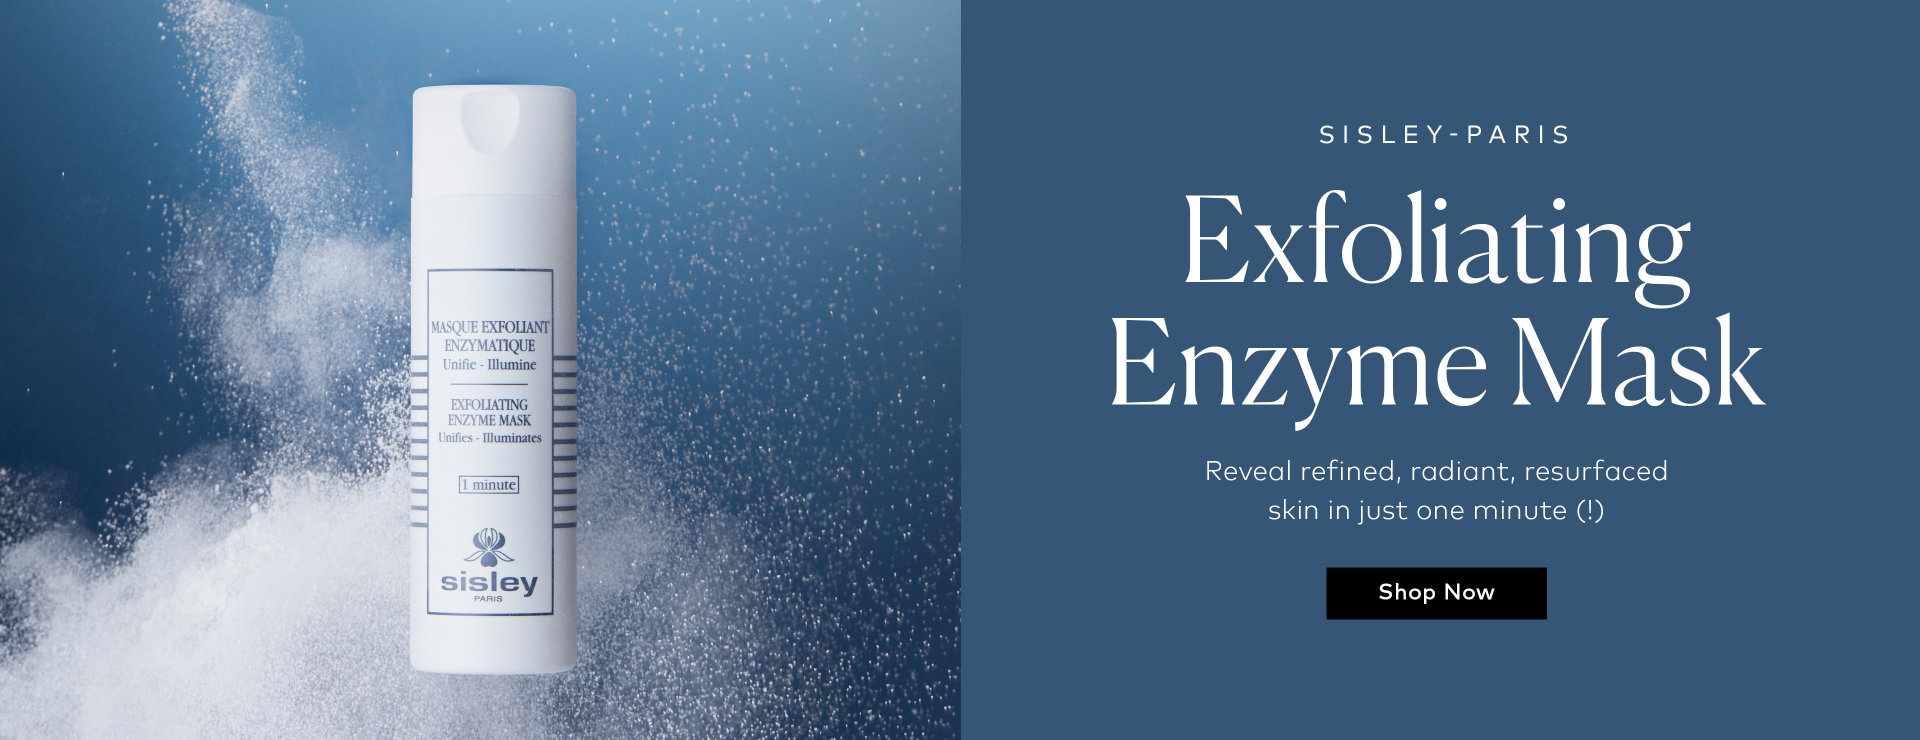 Shop the Sisley-Paris Exfoliating Enzyme Mask on Beautylish.com